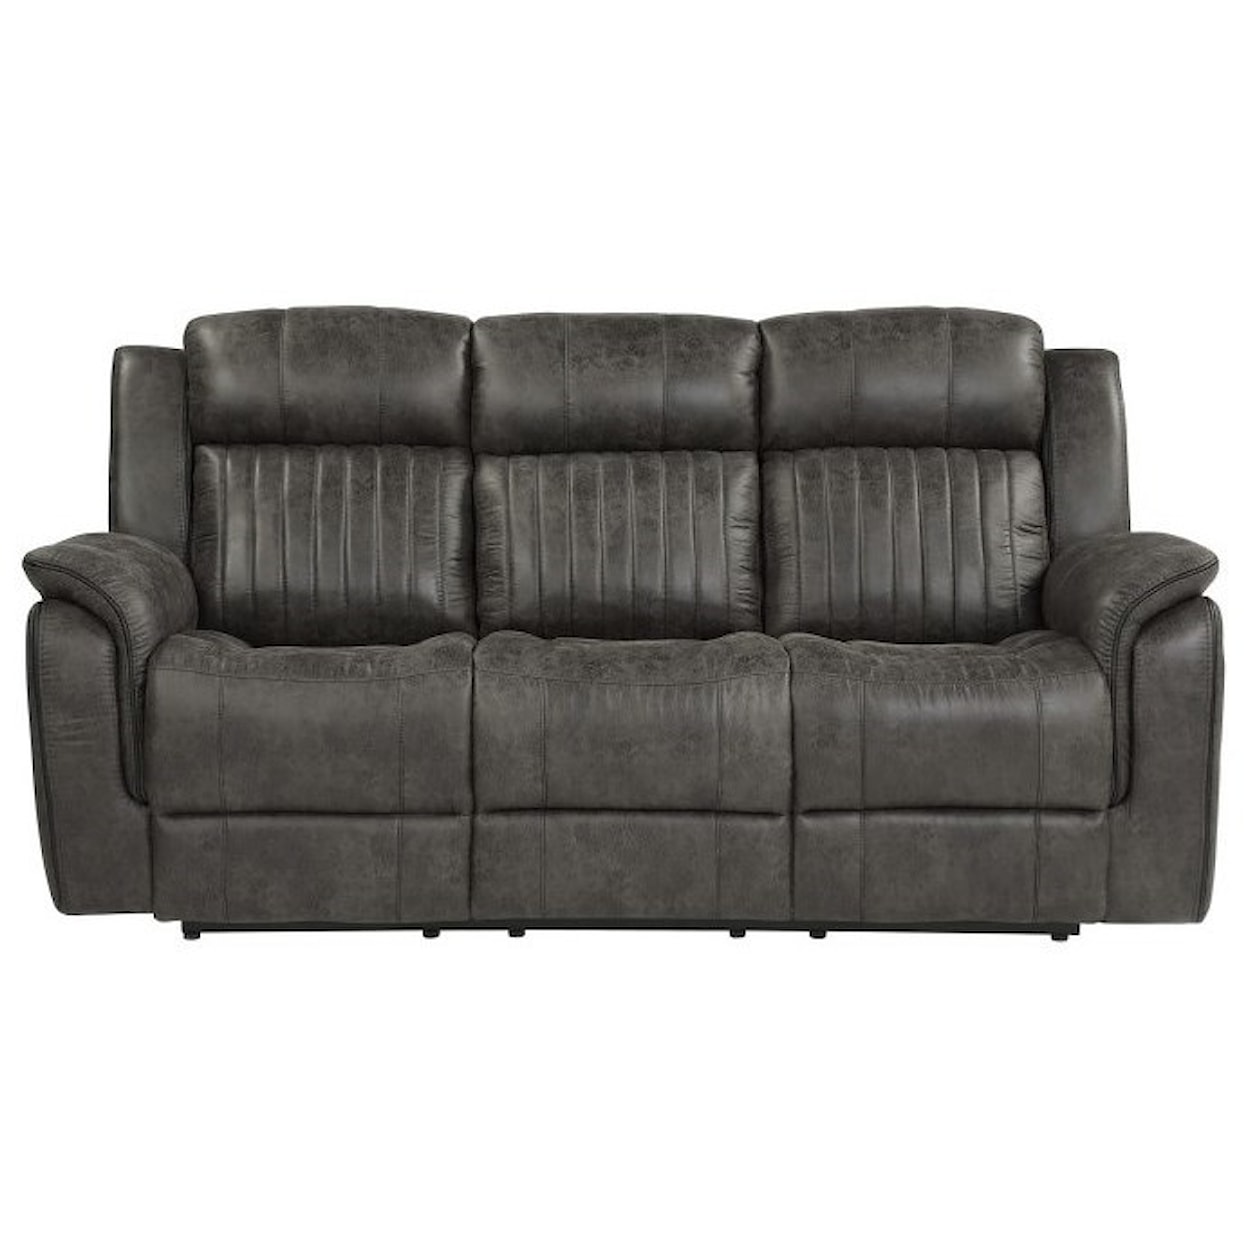 Homelegance Furniture Centeroak Double Reclining Sofa